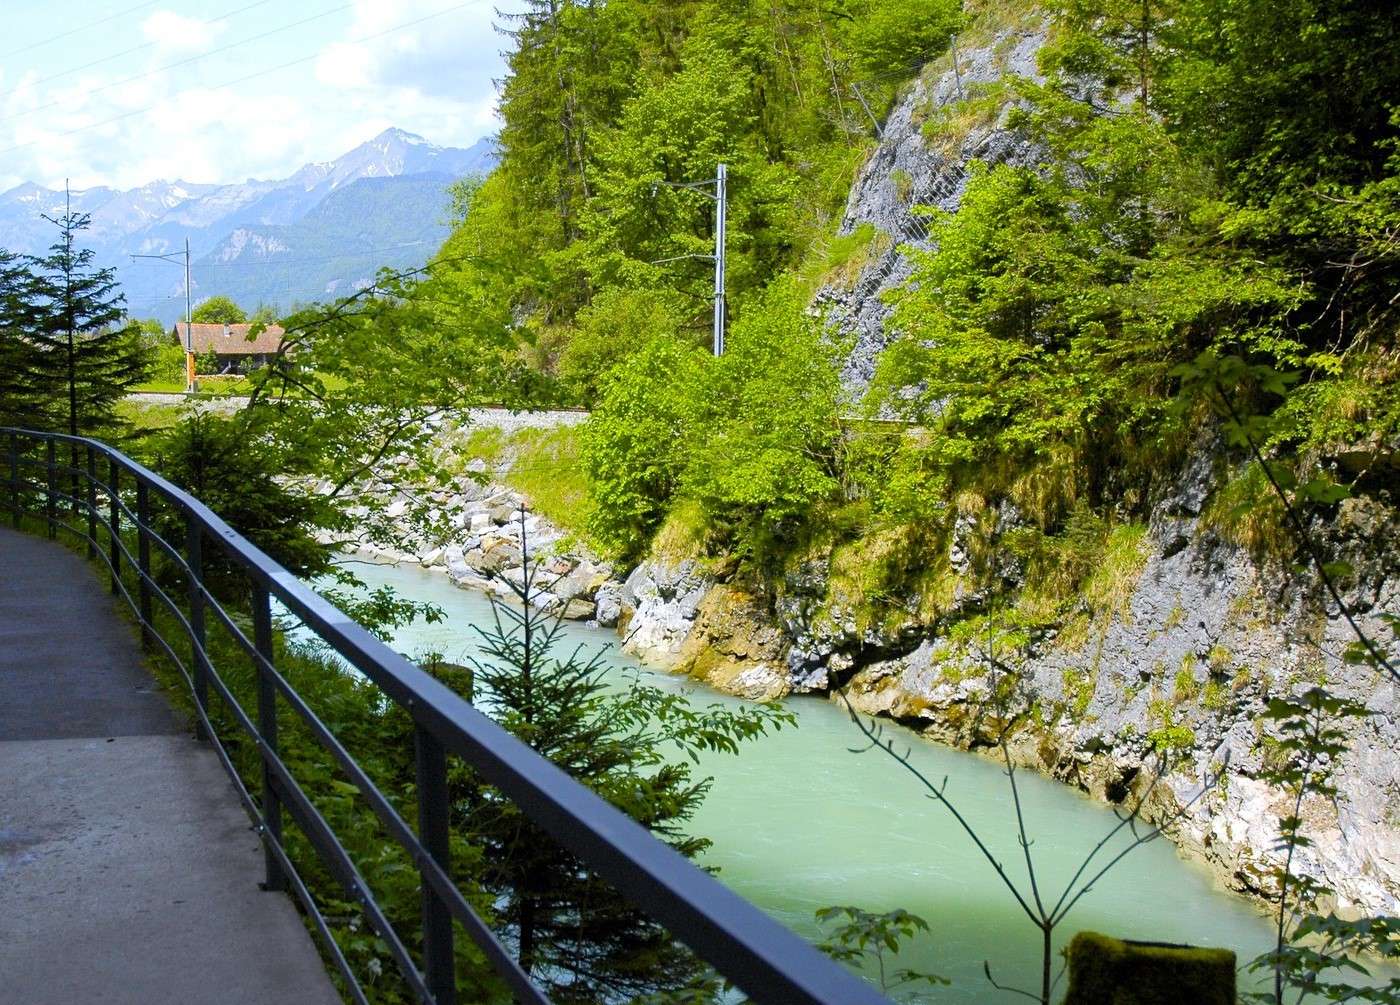 Švýcarsko - turistická stezka podél řeky Aare online puzzle